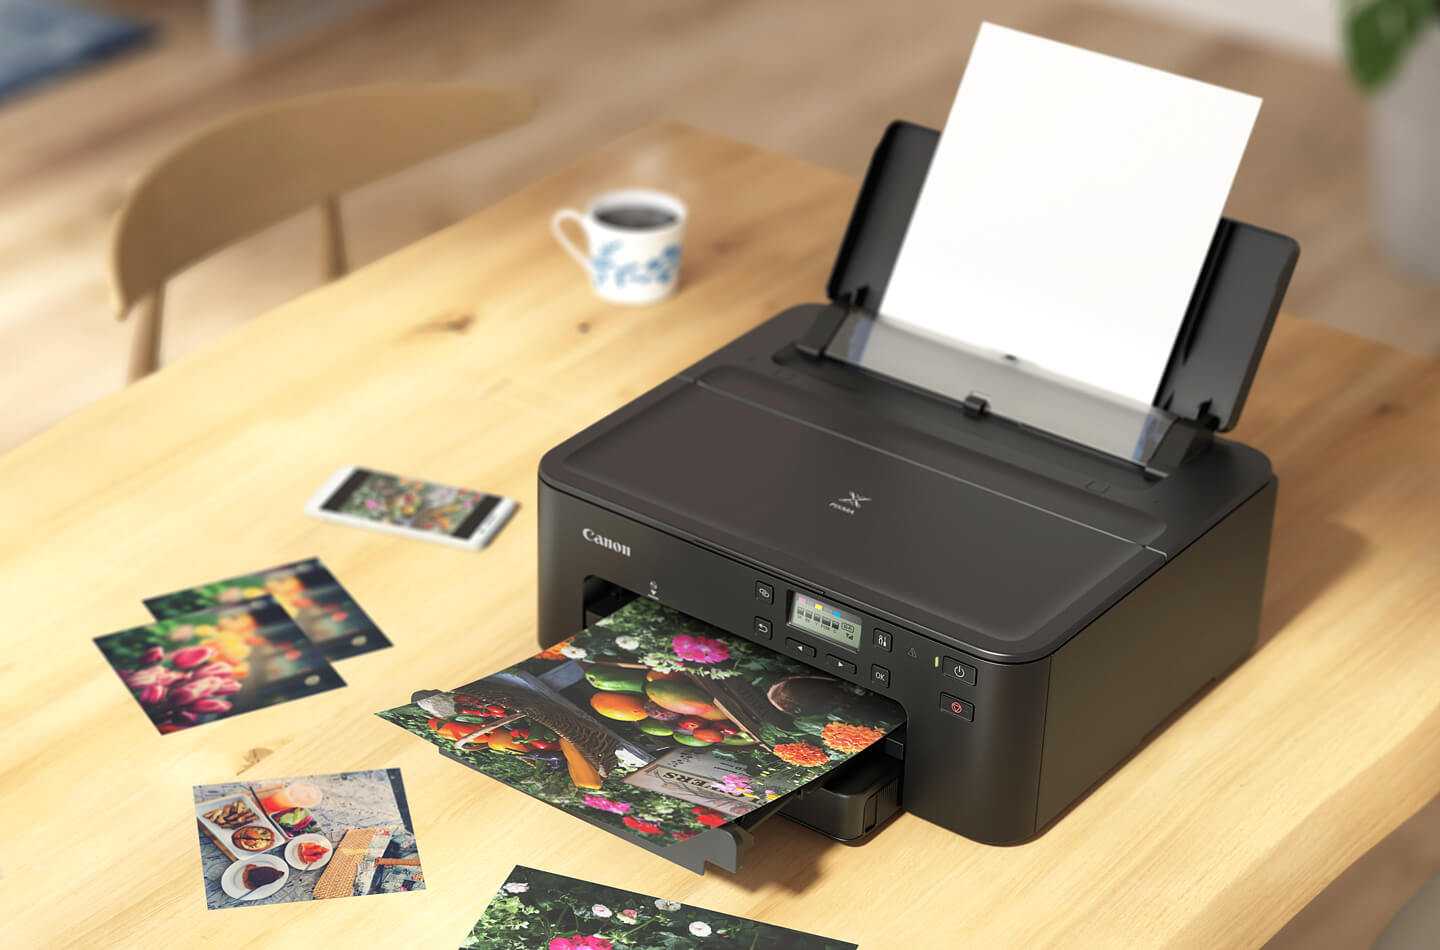 Как правильно выбрать принтер для дома